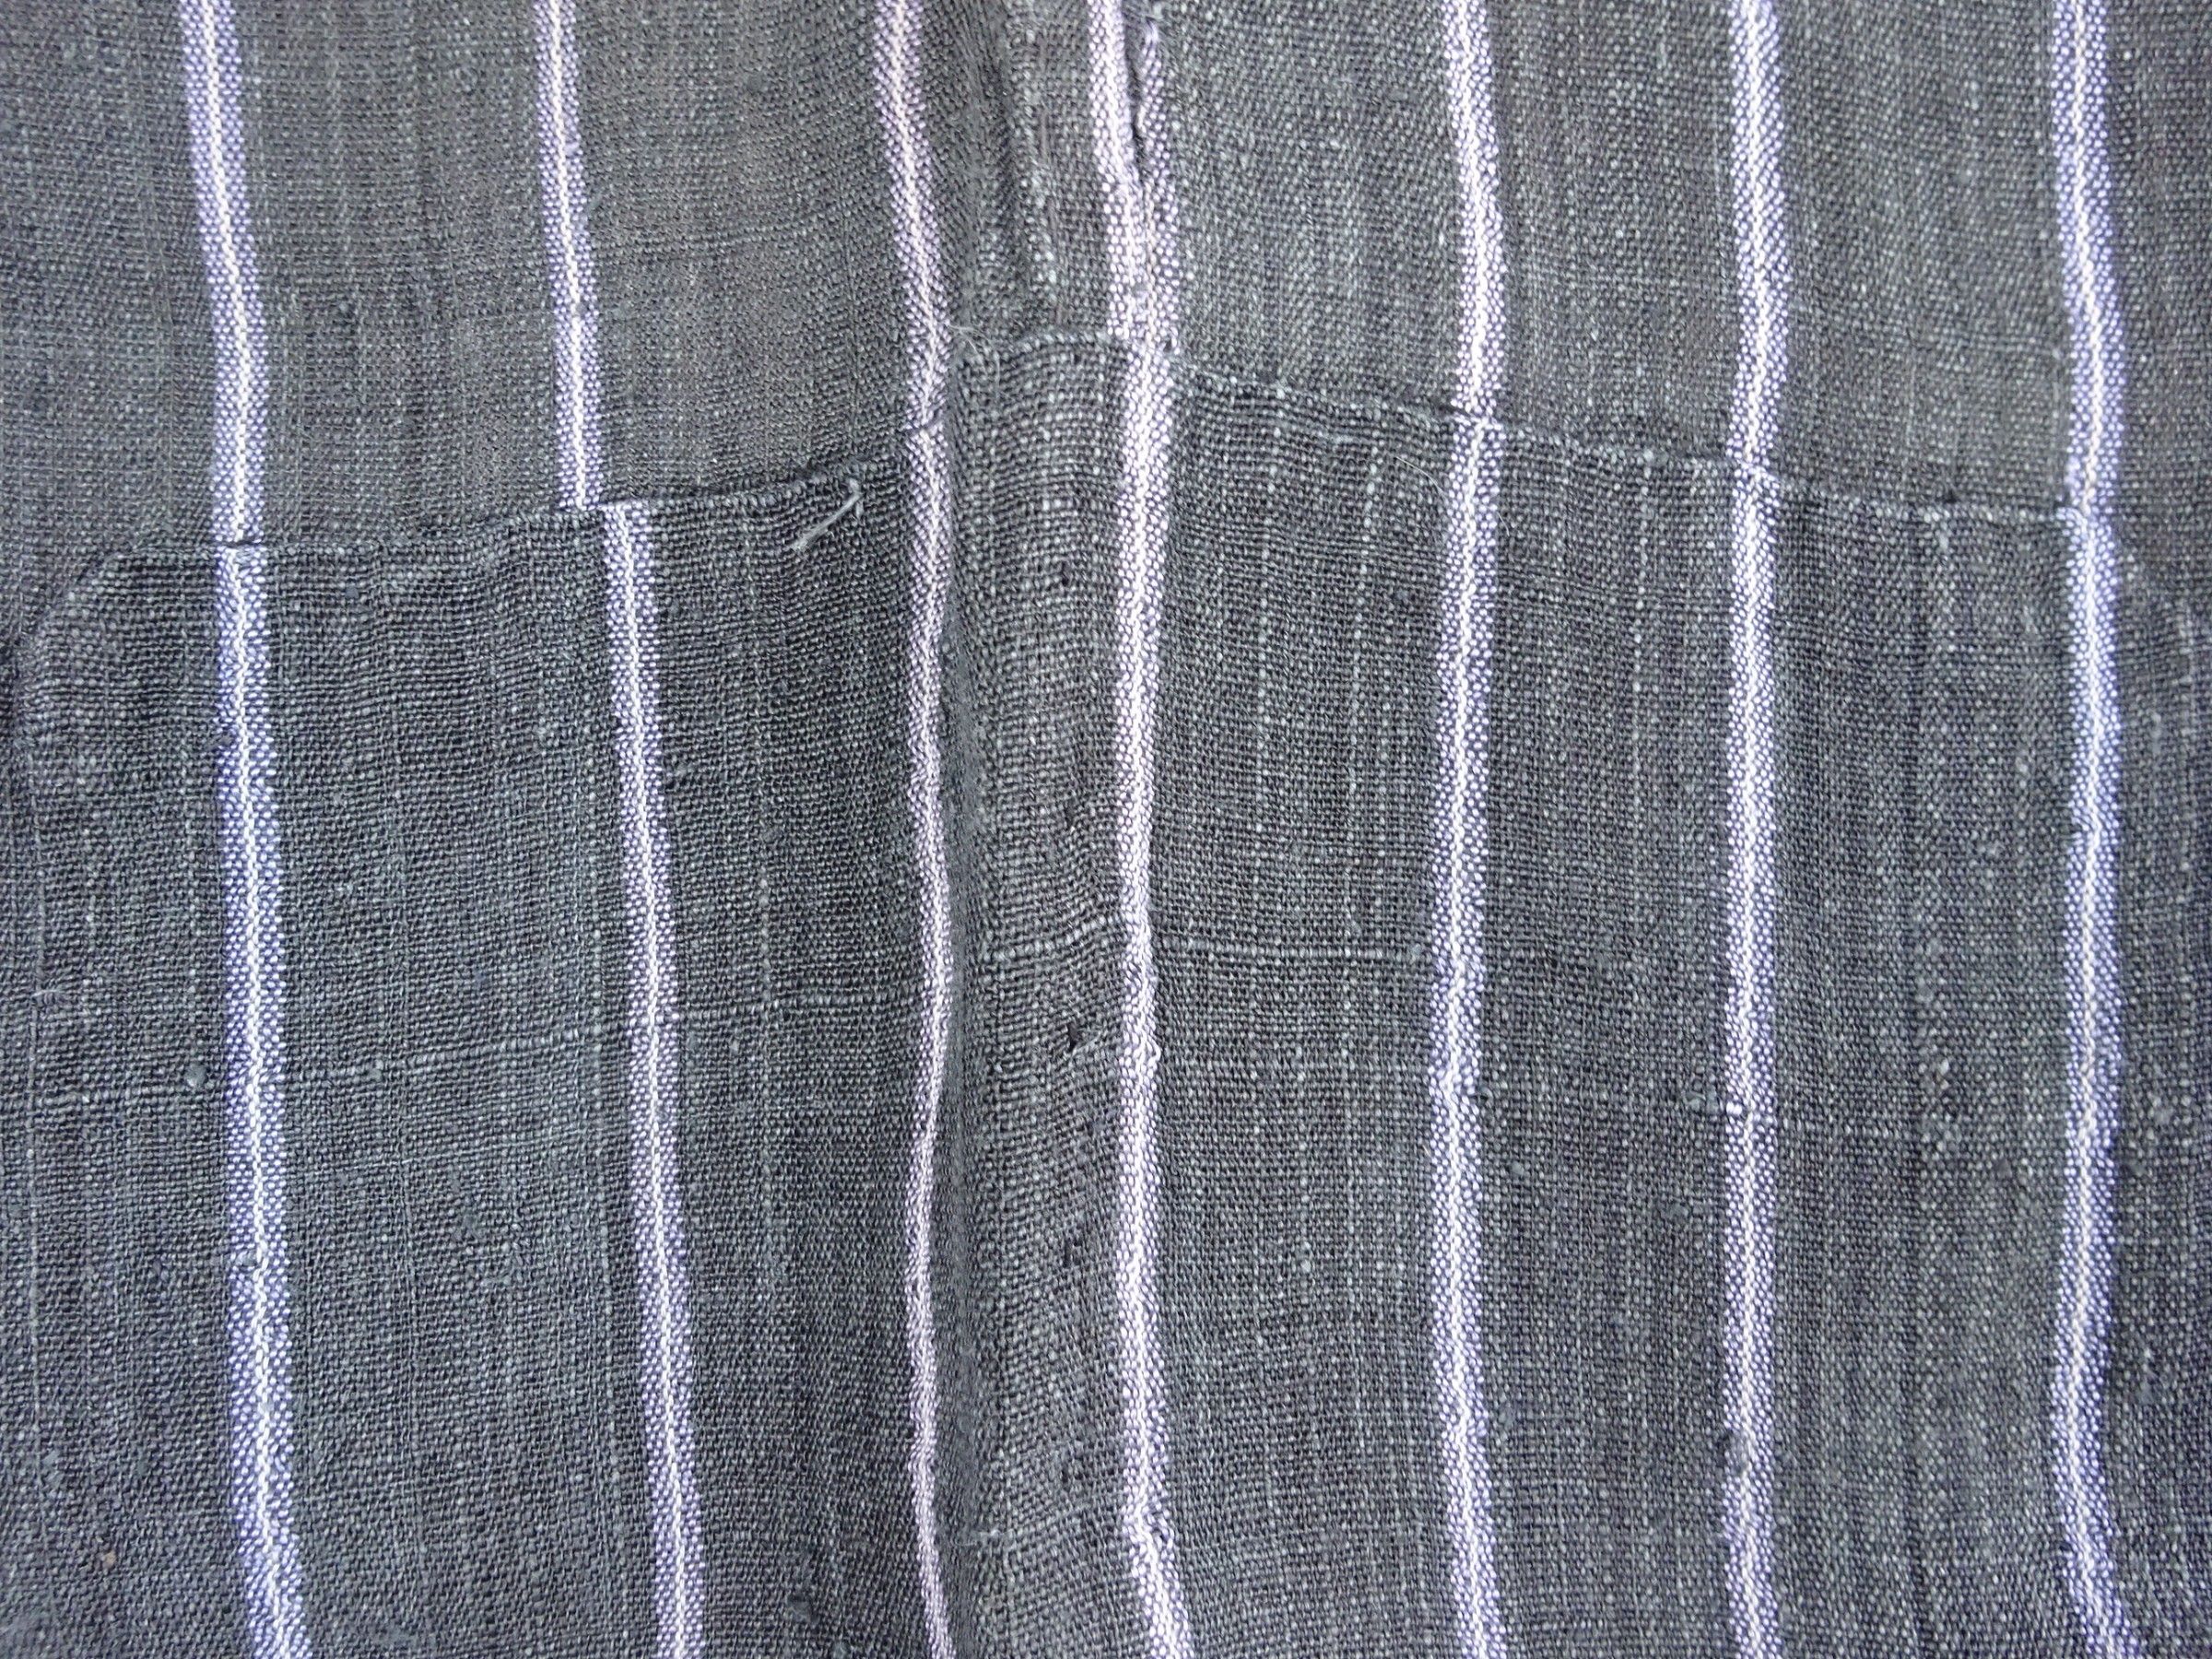 Japanese Vintage Textile Asa Noragi with Stripes Hanten